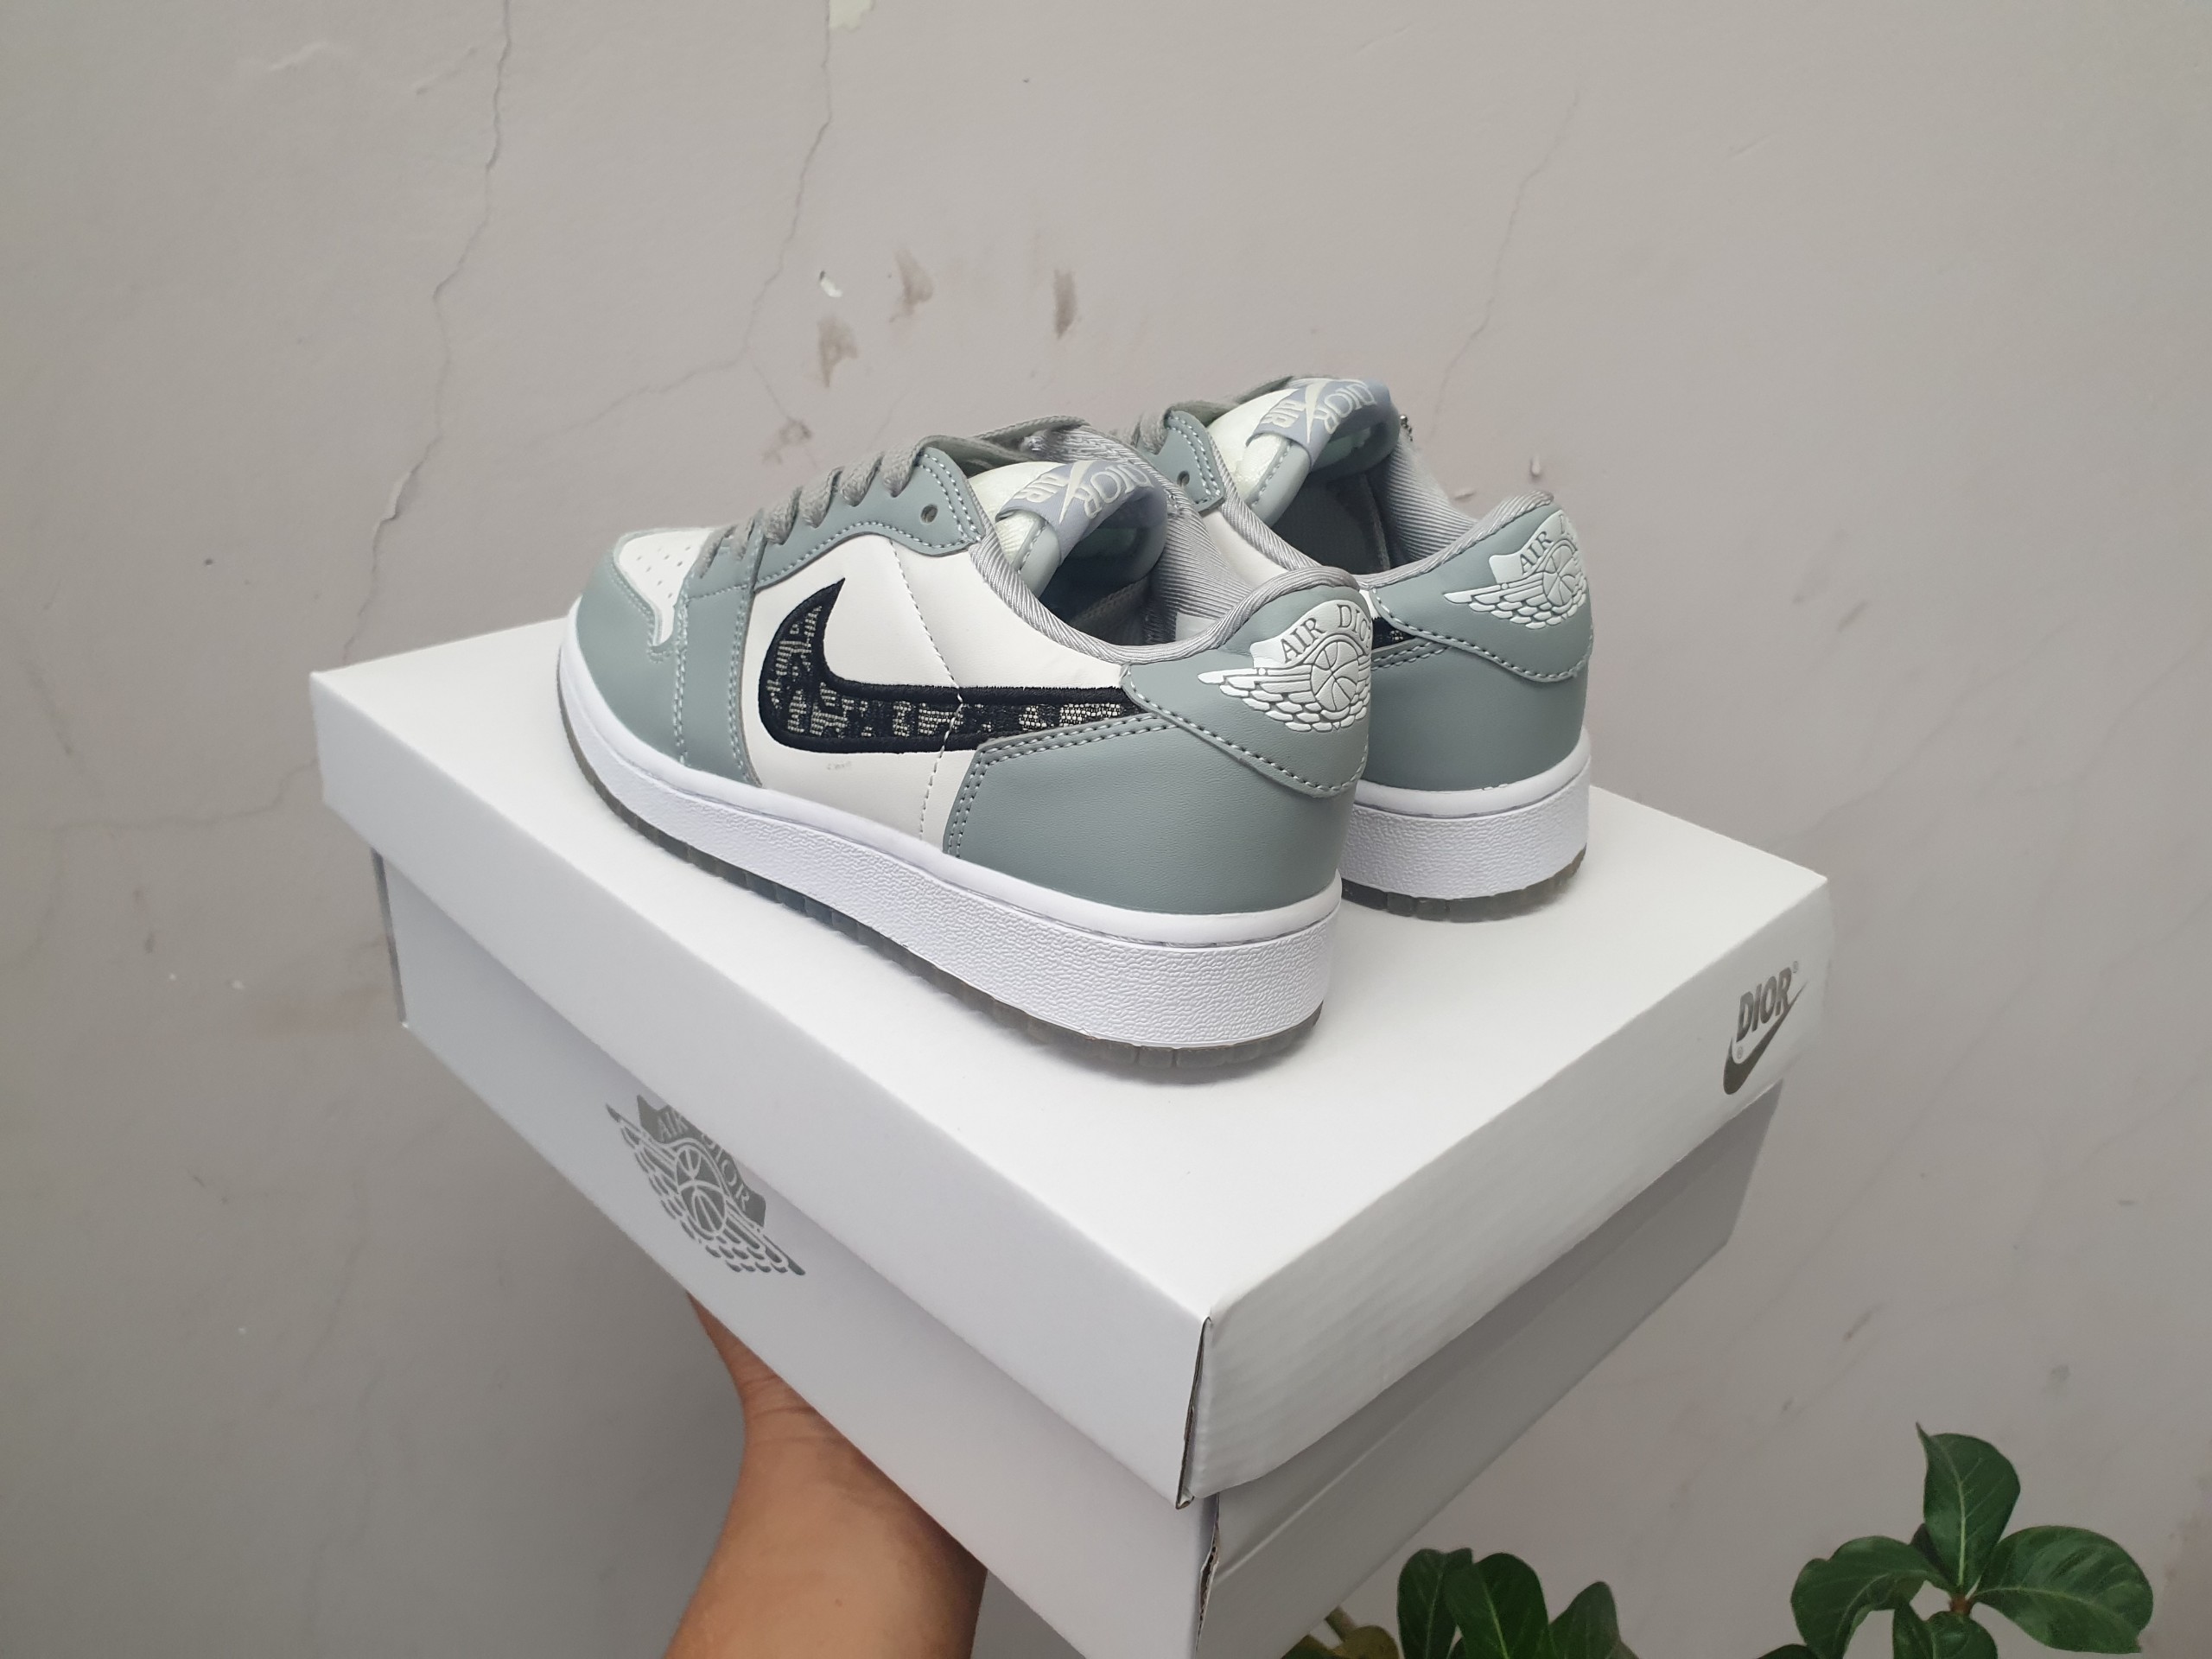 Giày Sneaker Nike Jordanx Dior Air Jordan 1 High